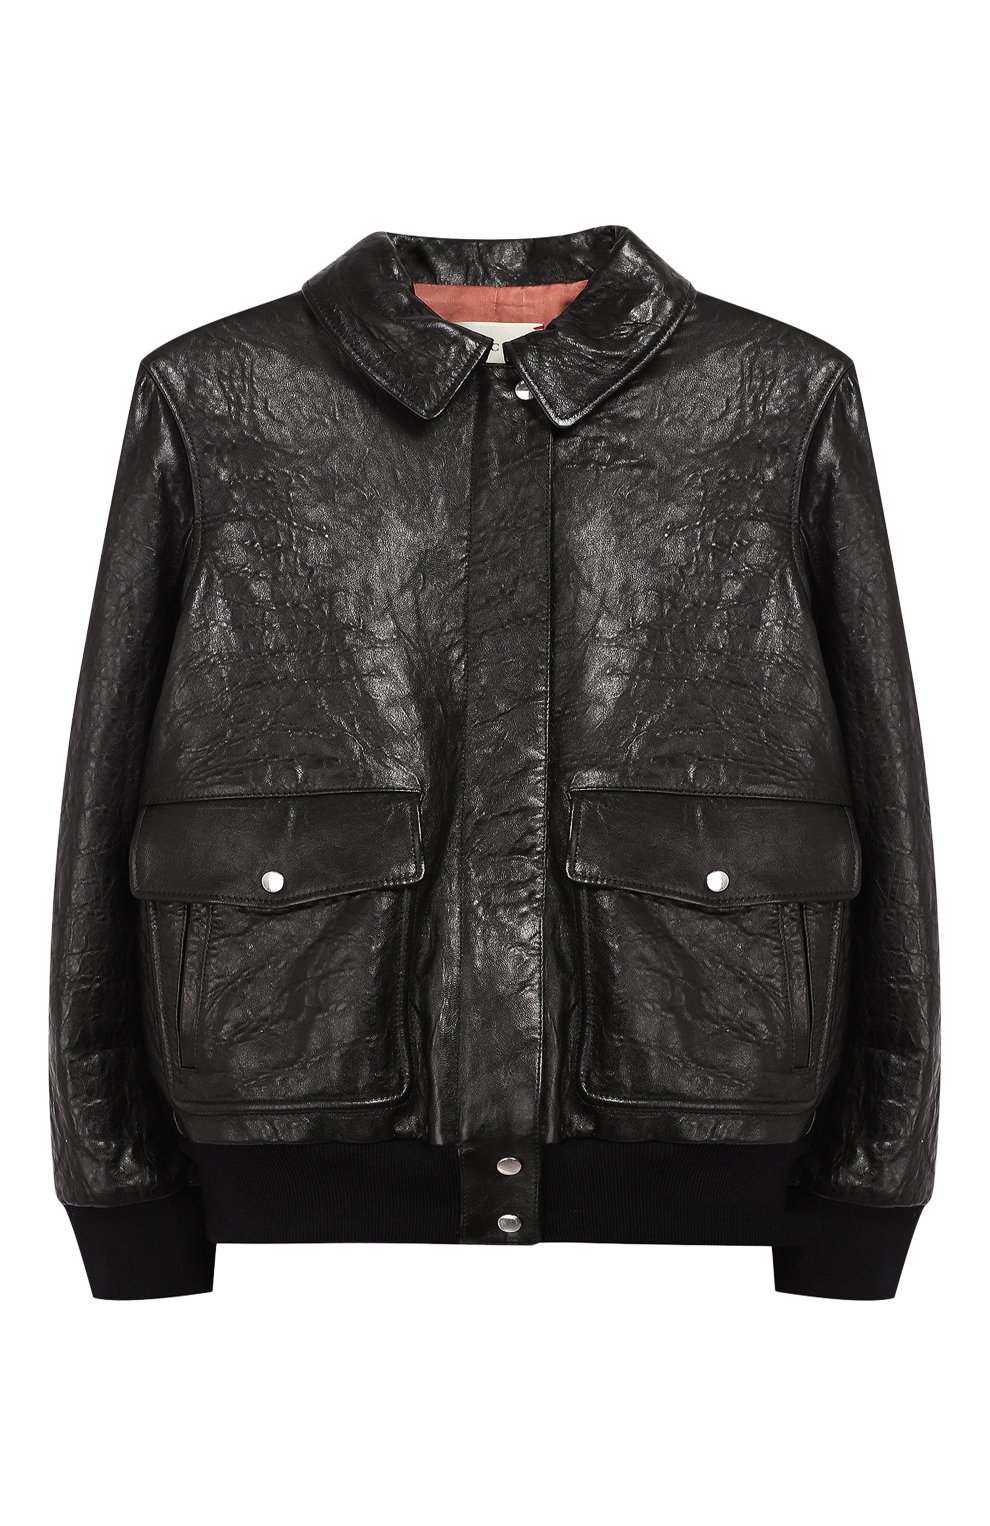 Верхняя одежда Gucci, Кожаная куртка с вышивкой Gucci, Италия, Чёрный, Подкладка-вискоза: 100%; Кожа: 100%;, 6450744  - купить